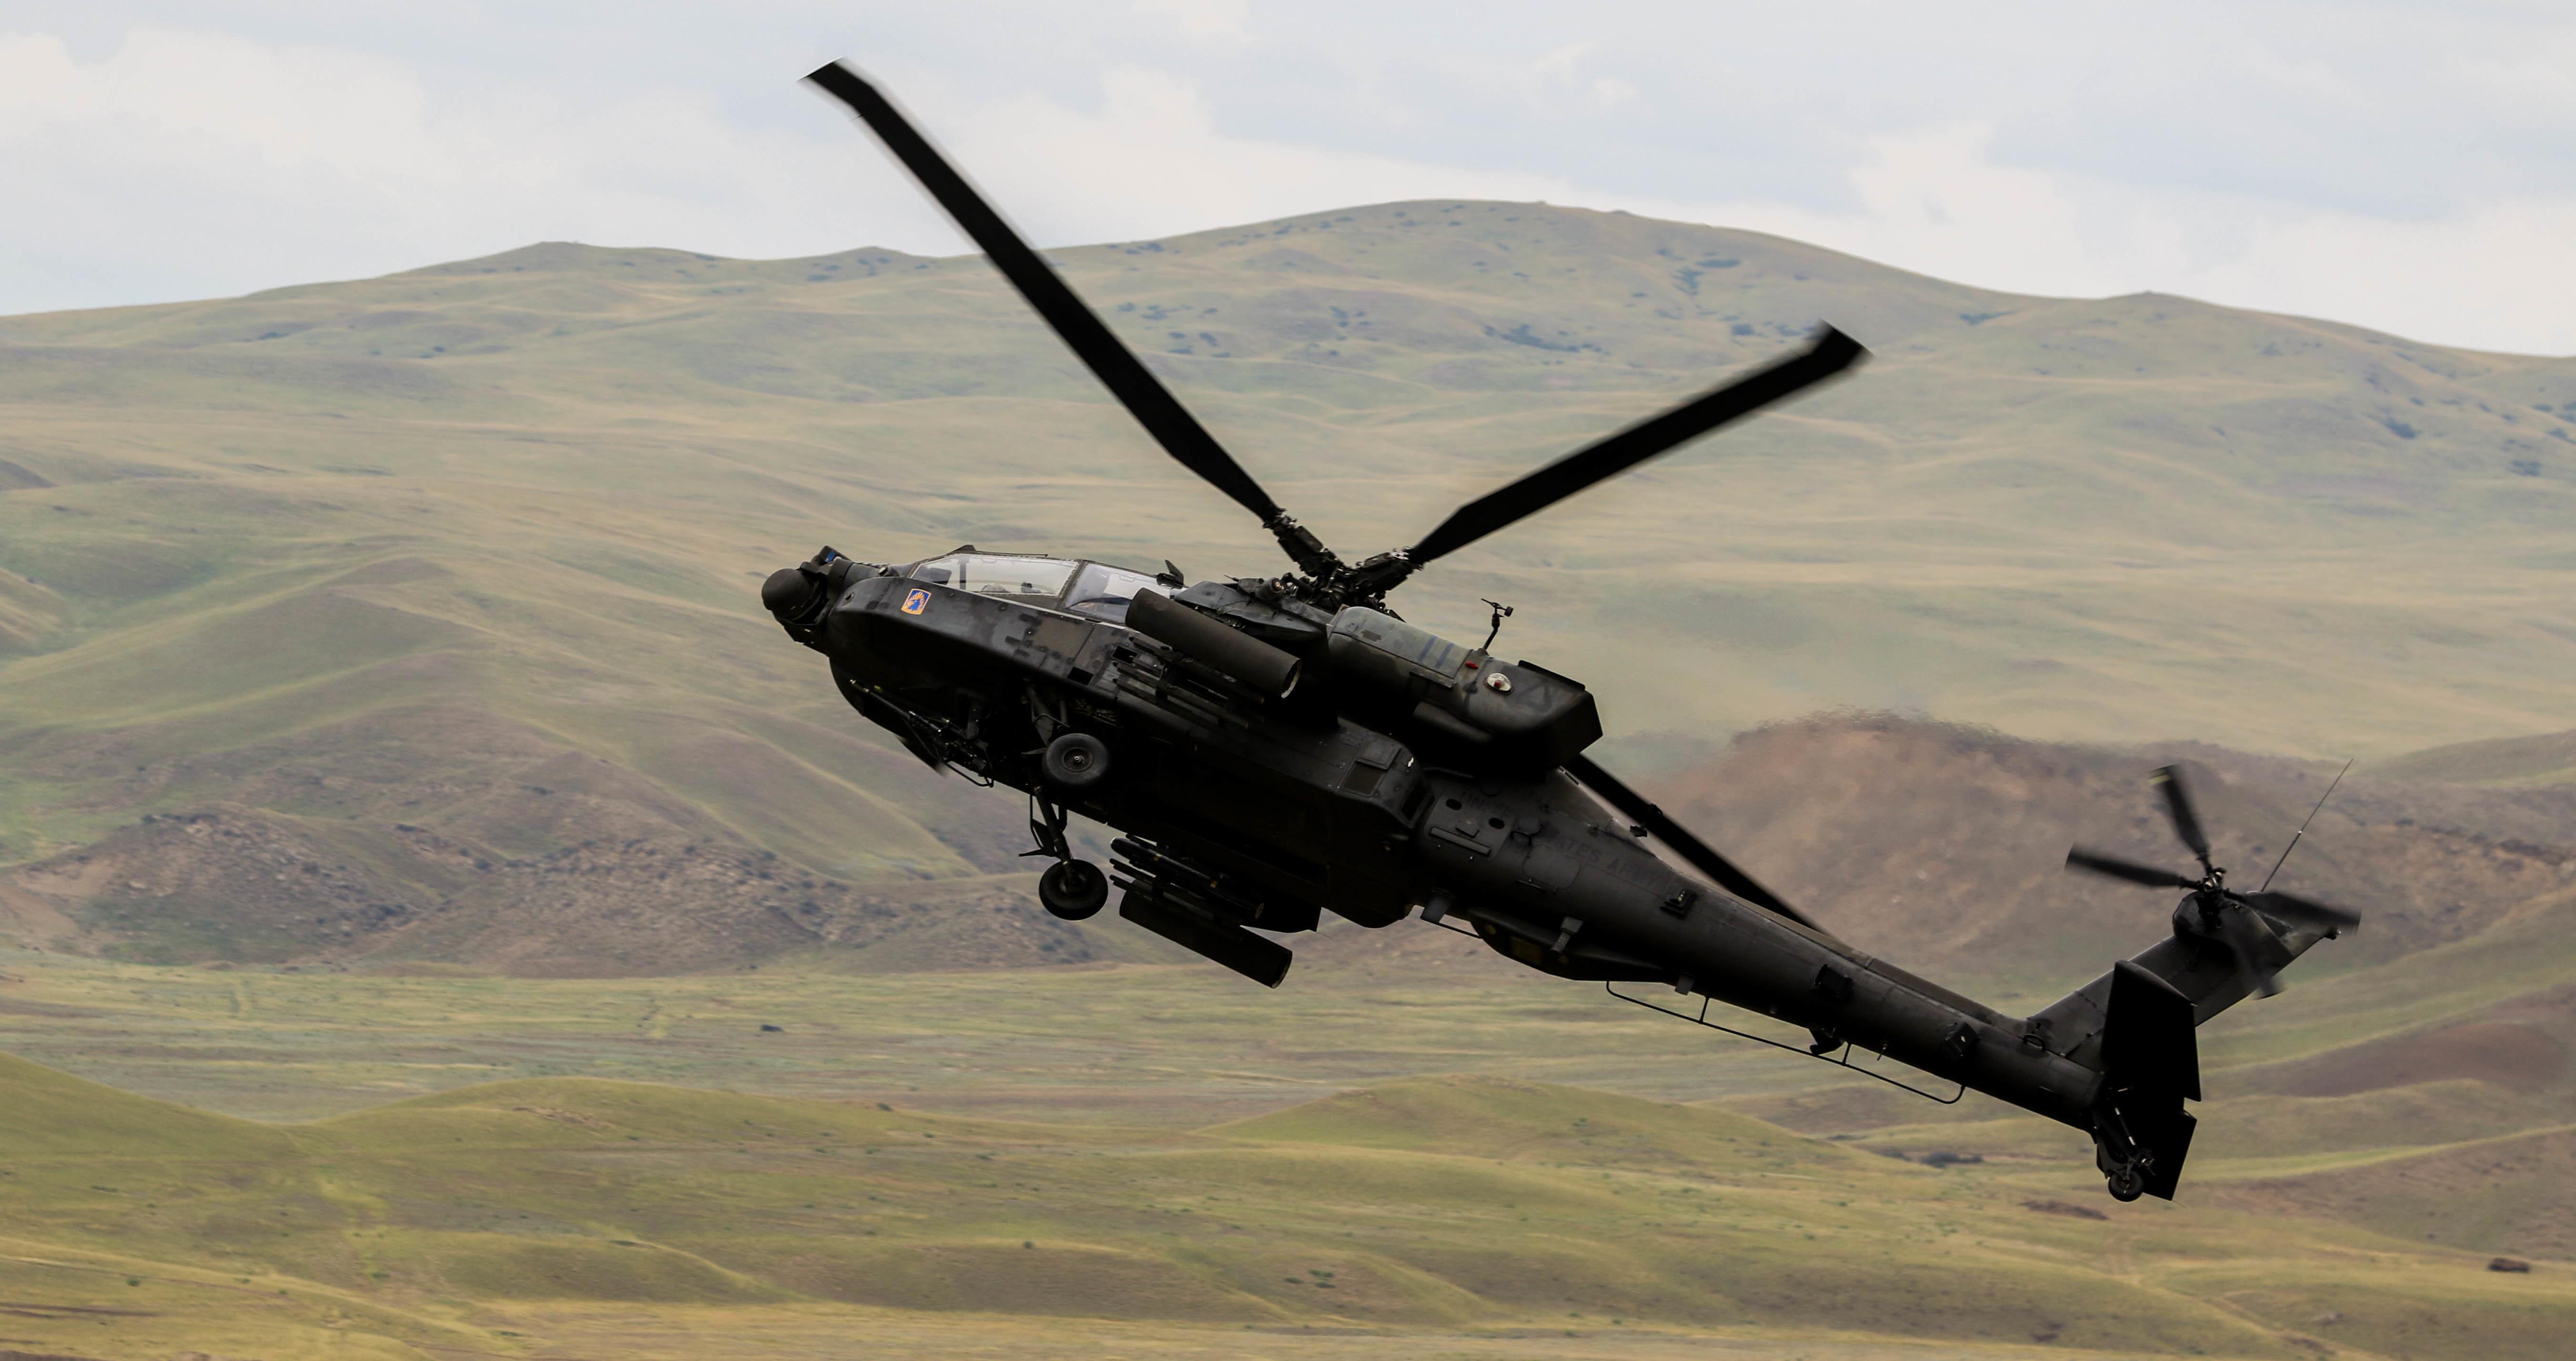 Американский ударный вертолет AH-64 Apache над учебным полигоном Vaziani, Грузия, в ходе многонационального учения  Noble Partner 18, фото сделано 15 августа 2018 года